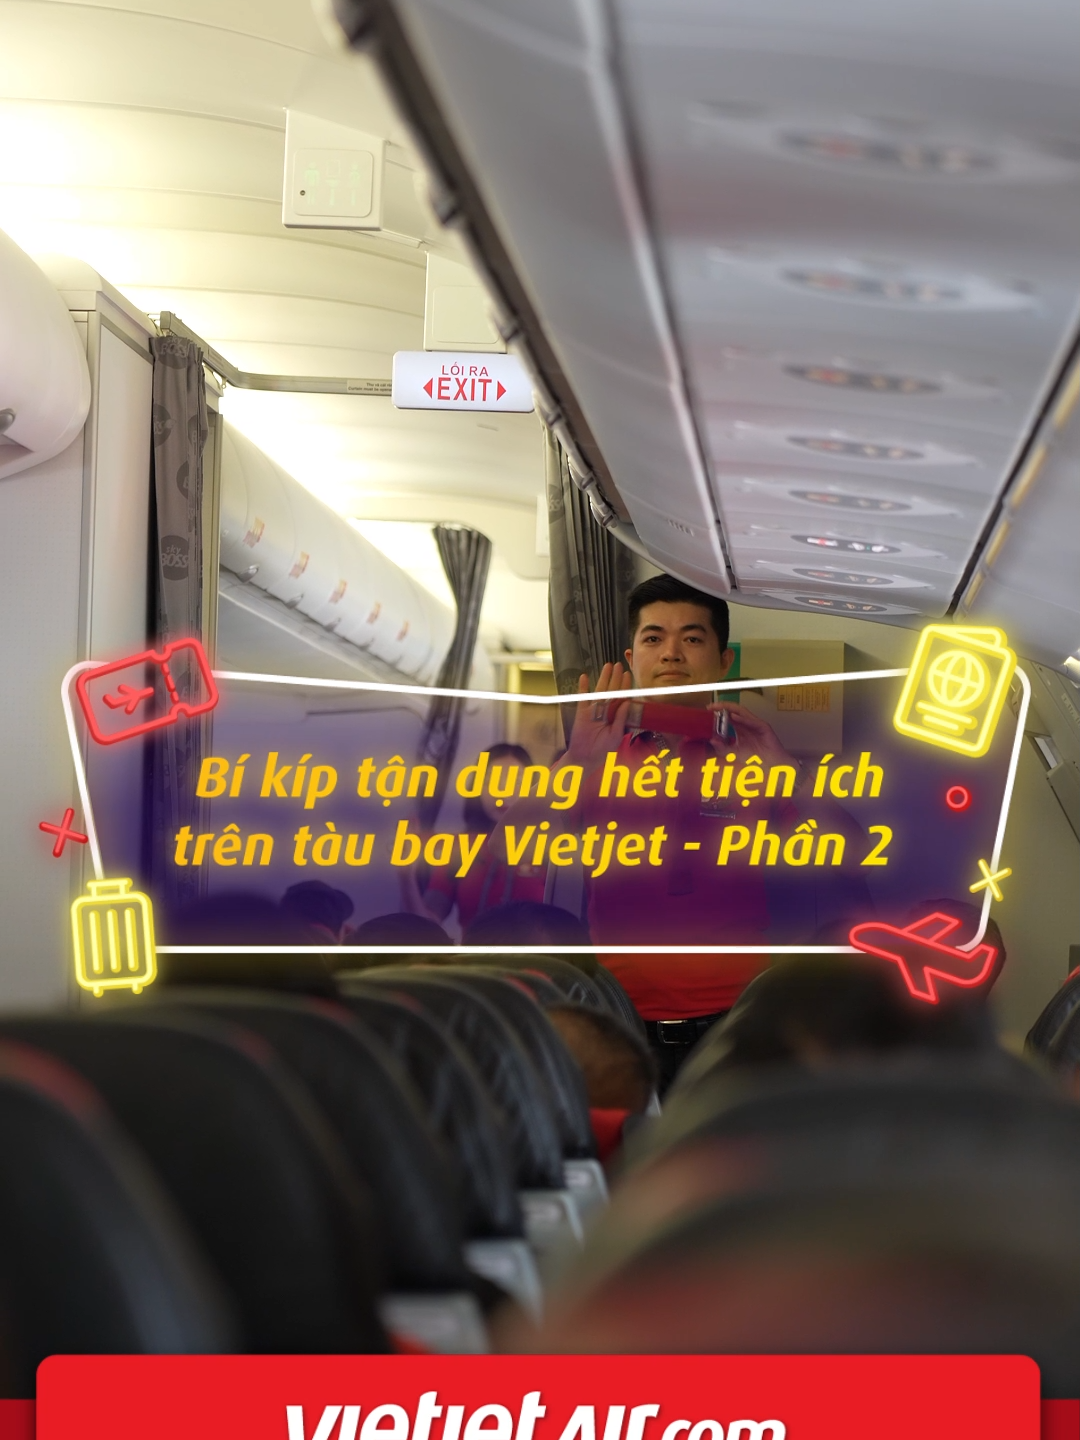 Bí kíp tận dụng tiện ích trên tàu bay Vietjet phần 2 có gì? Vietjet tặng bạn thêm 4 bí kíp hữu ích trong video bên dưới nhé! #Vietjet #BayLaThichNgay